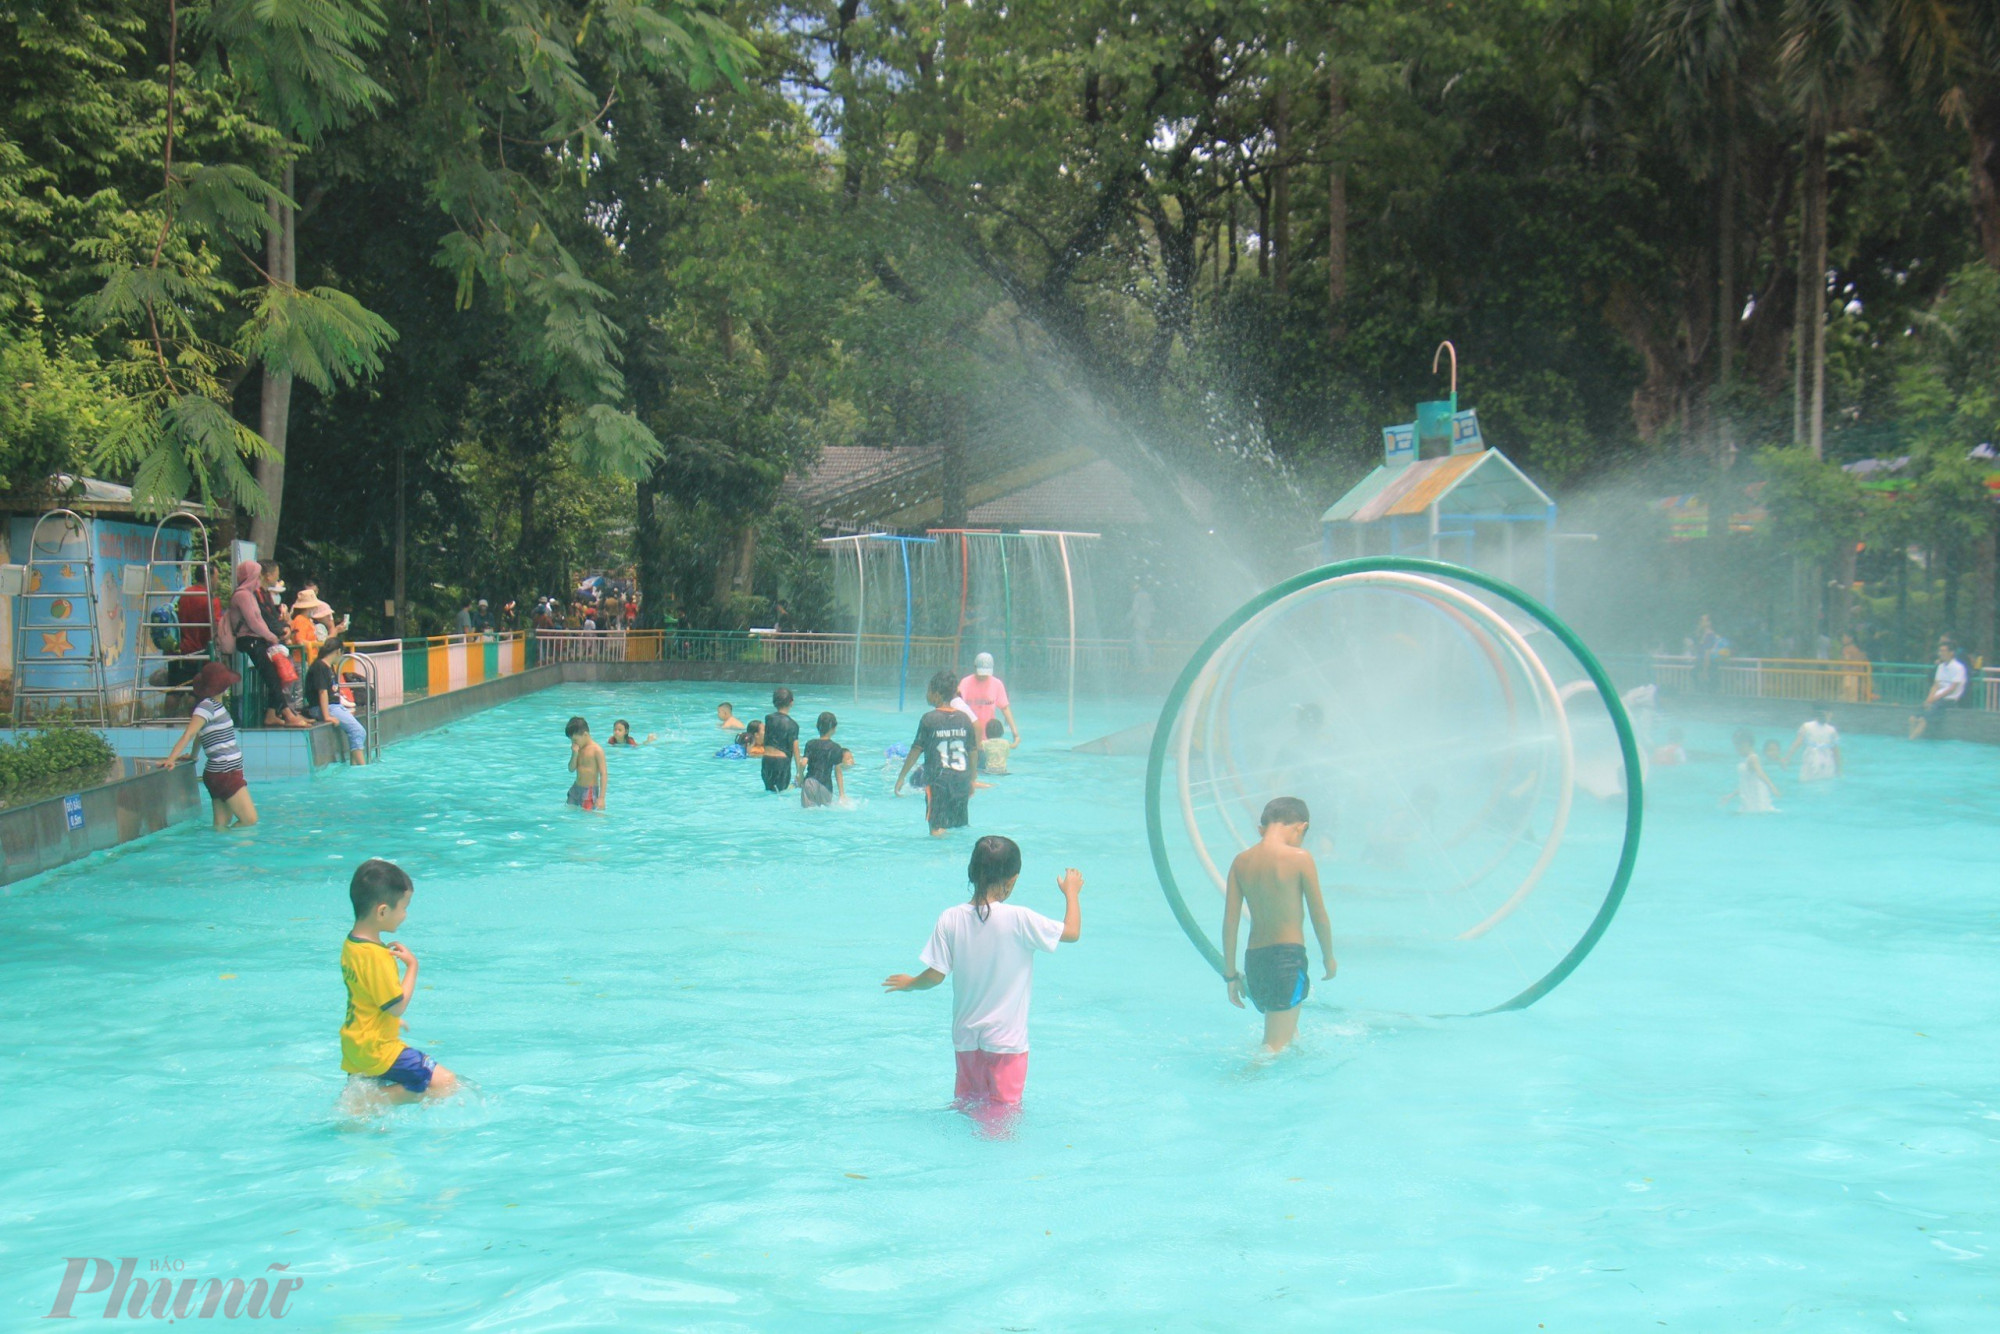 Khu vực công viên nước bên trong Thảo Cầm Viên luôn thu hút lượng lớn các em nhỏ vui chơi trong thời tiết khá nắng nóng.